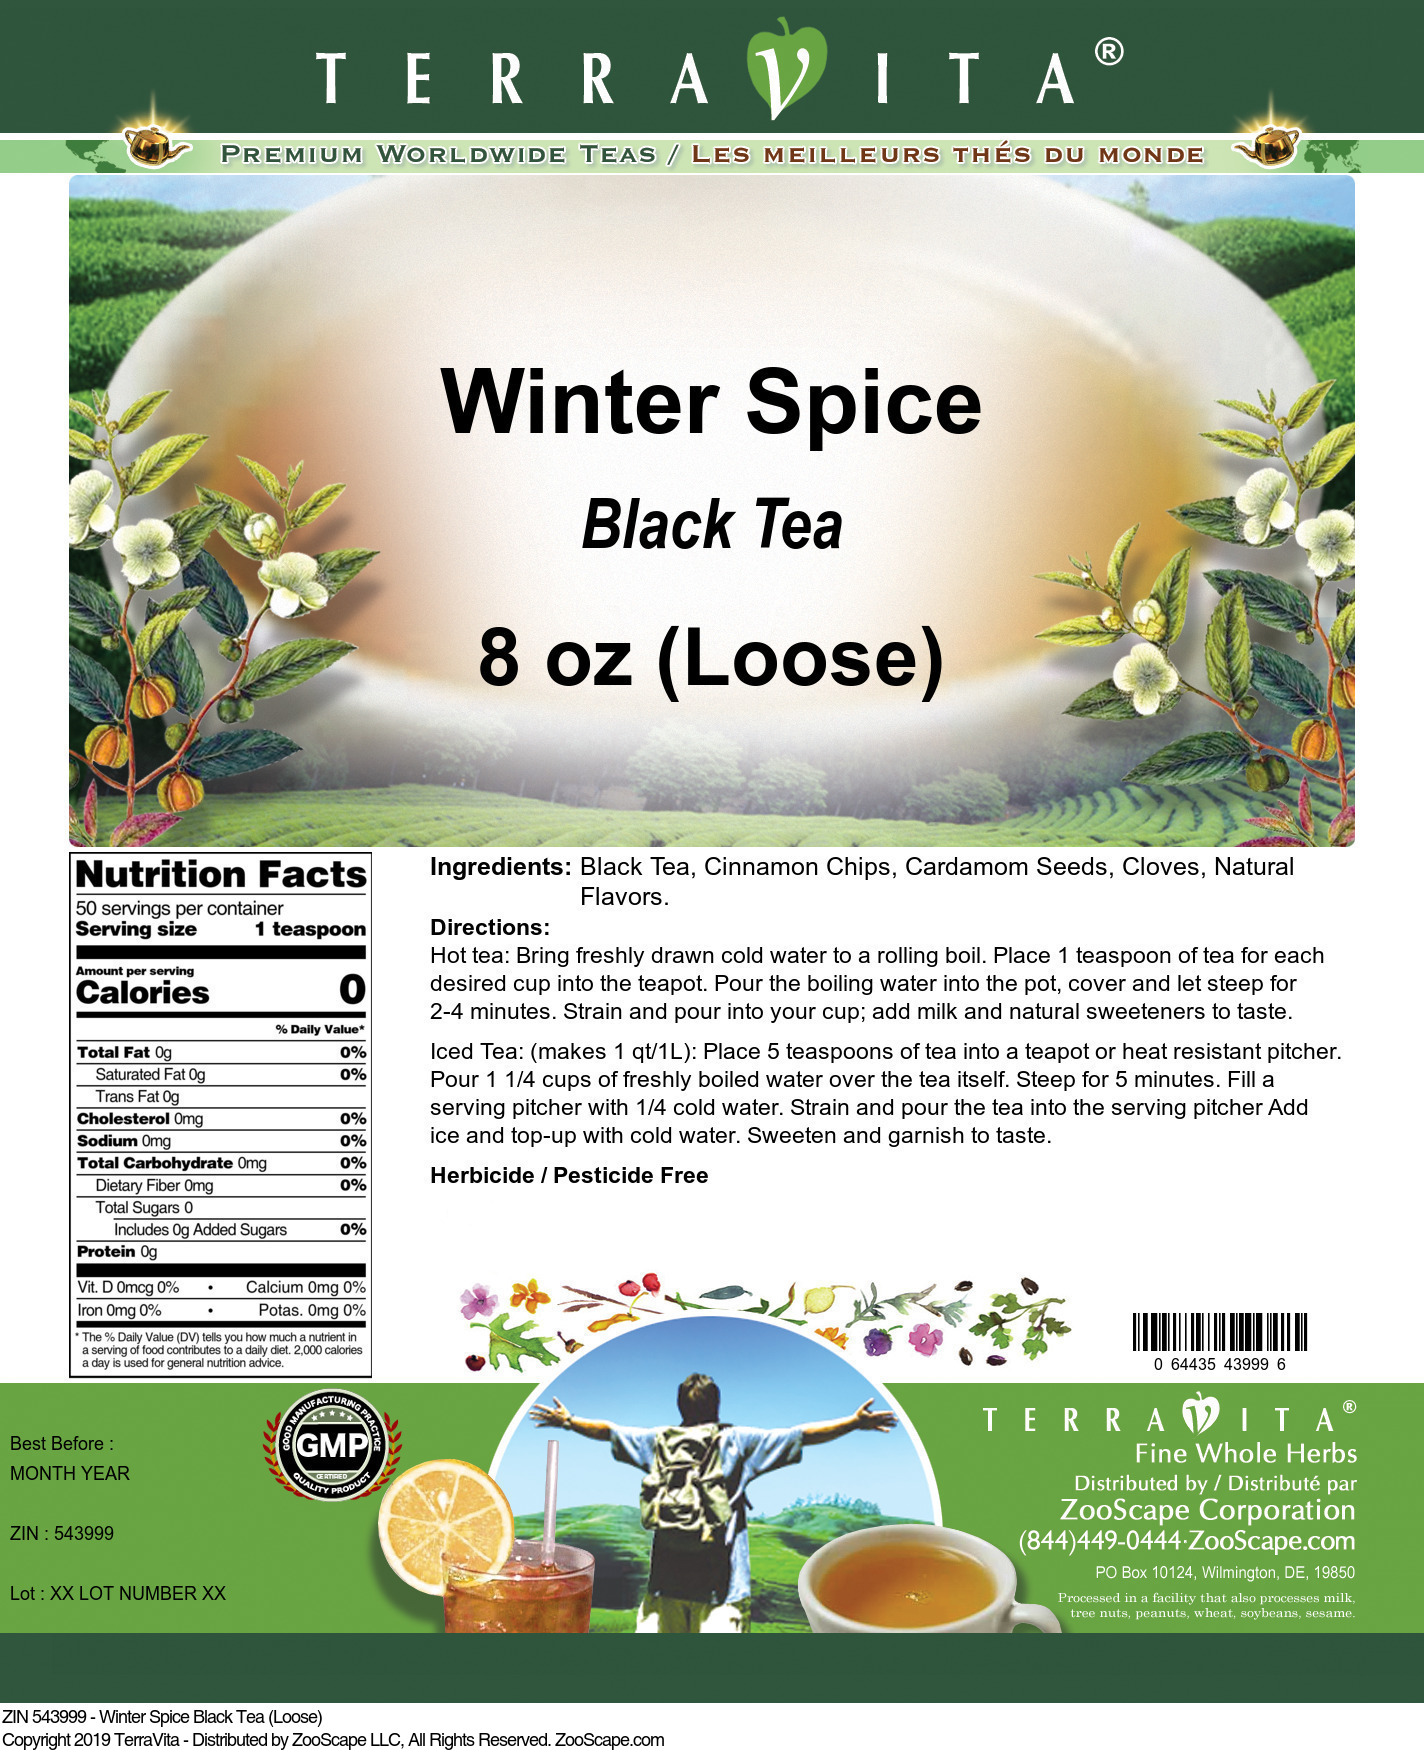 Winter Spice Black Tea (Loose) - Label